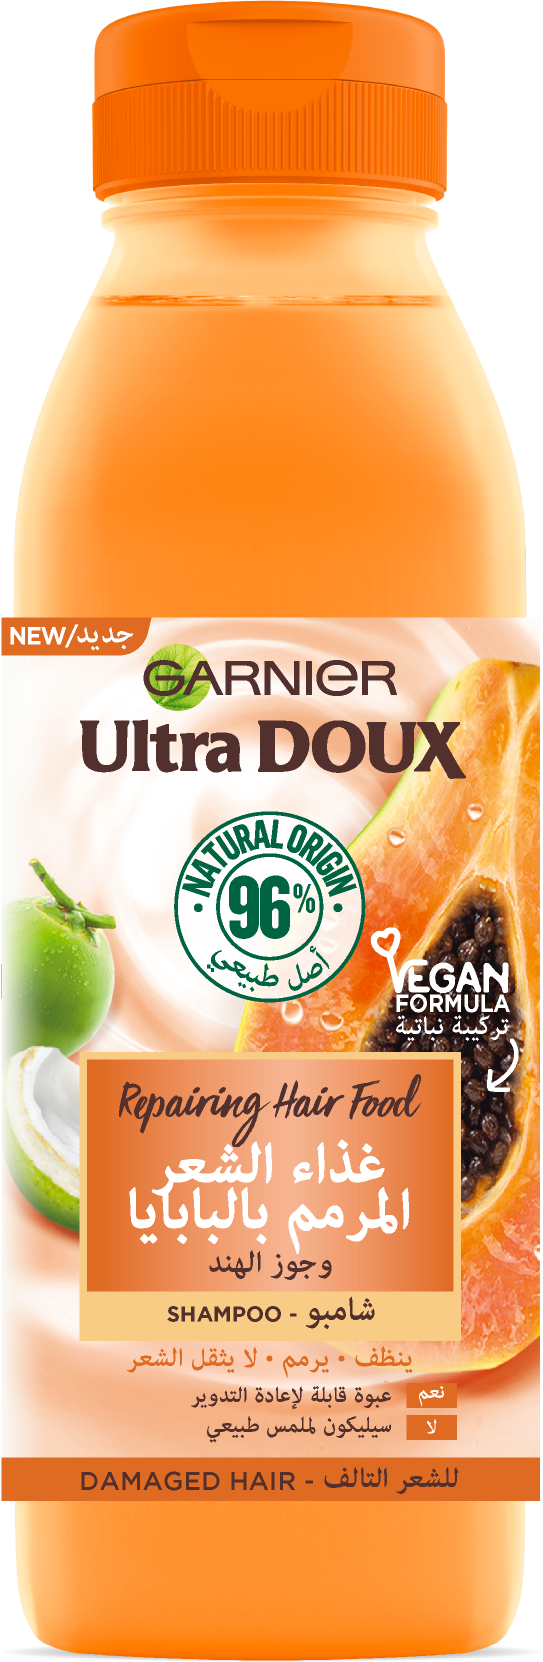 Garnier Ultra Doux - Hair Food - Shampooing réparateur pour cheveux abîmés - 350ml